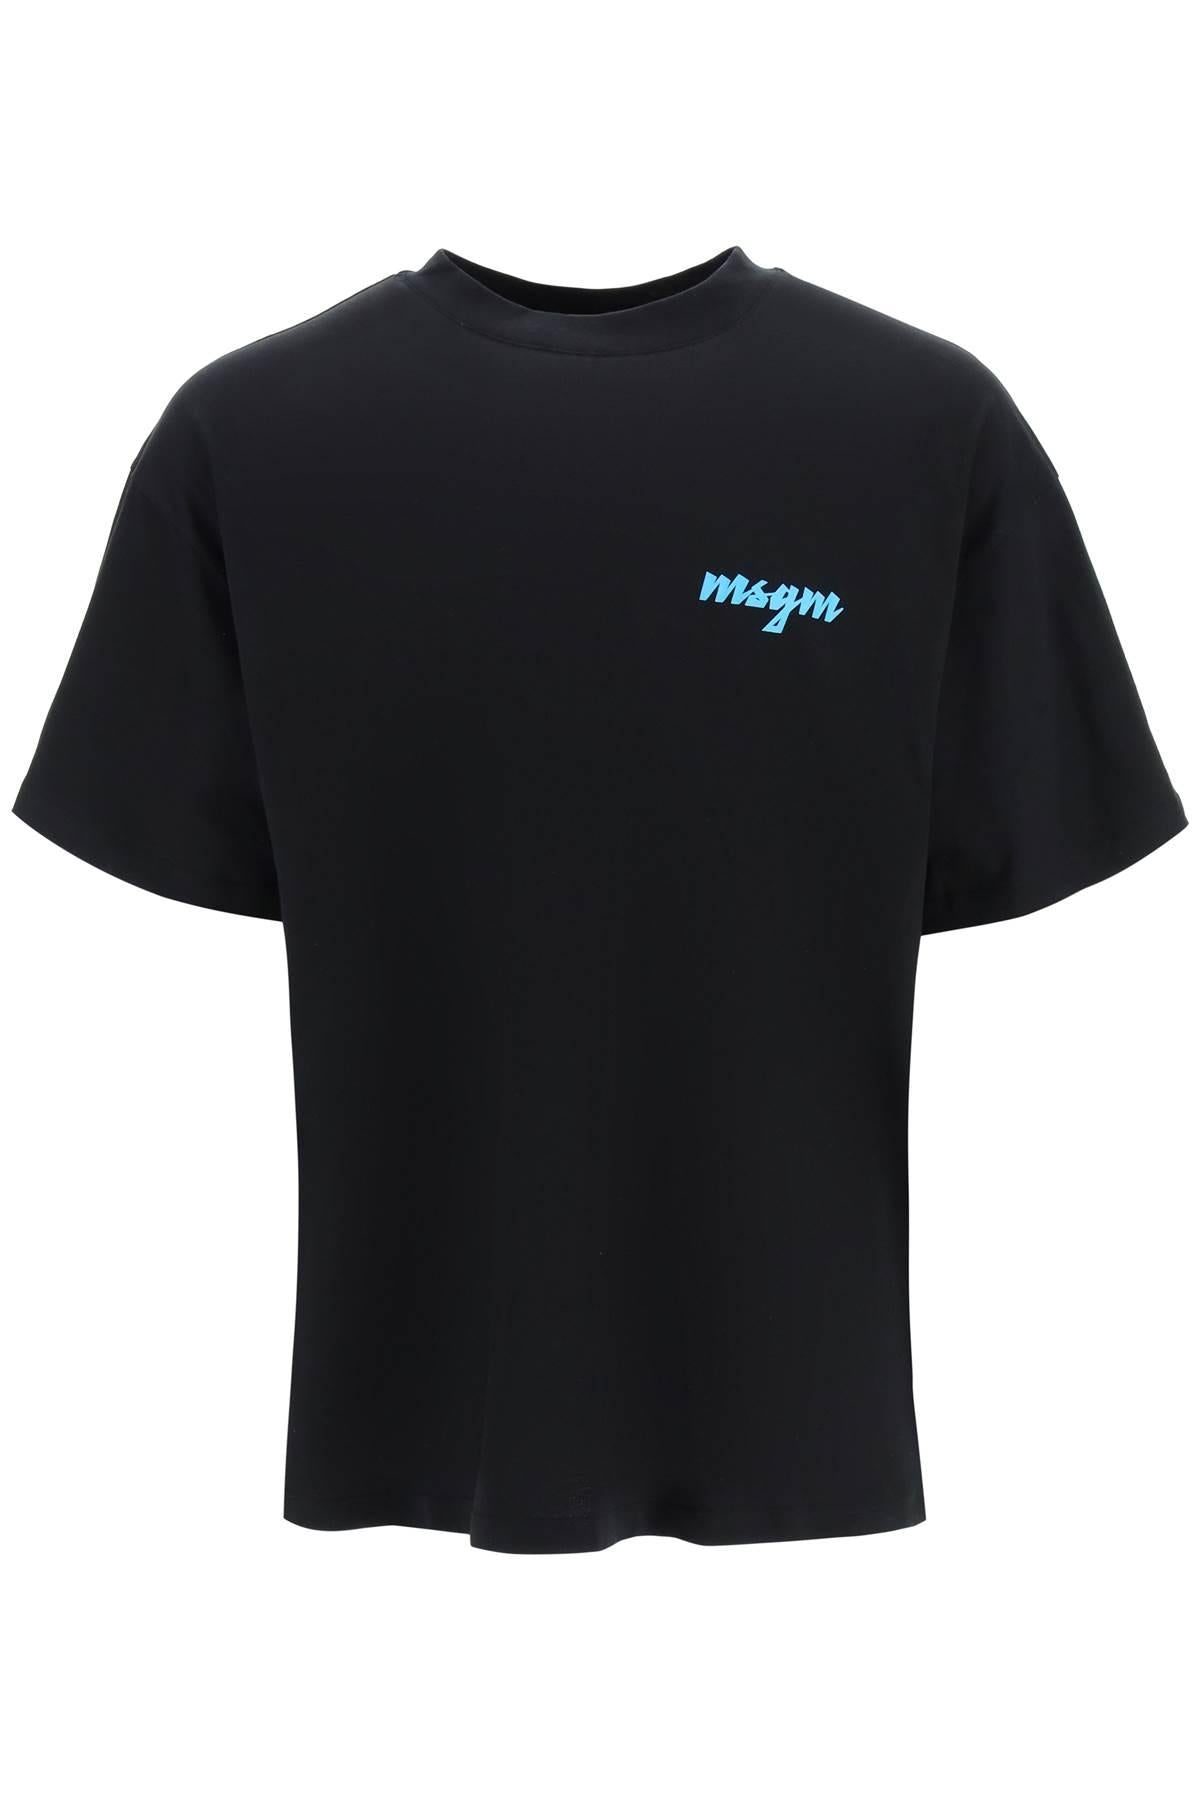 《新品》MSGM(エムエスジーエム)ボックス ロゴ Tシャツ2641 MDM95